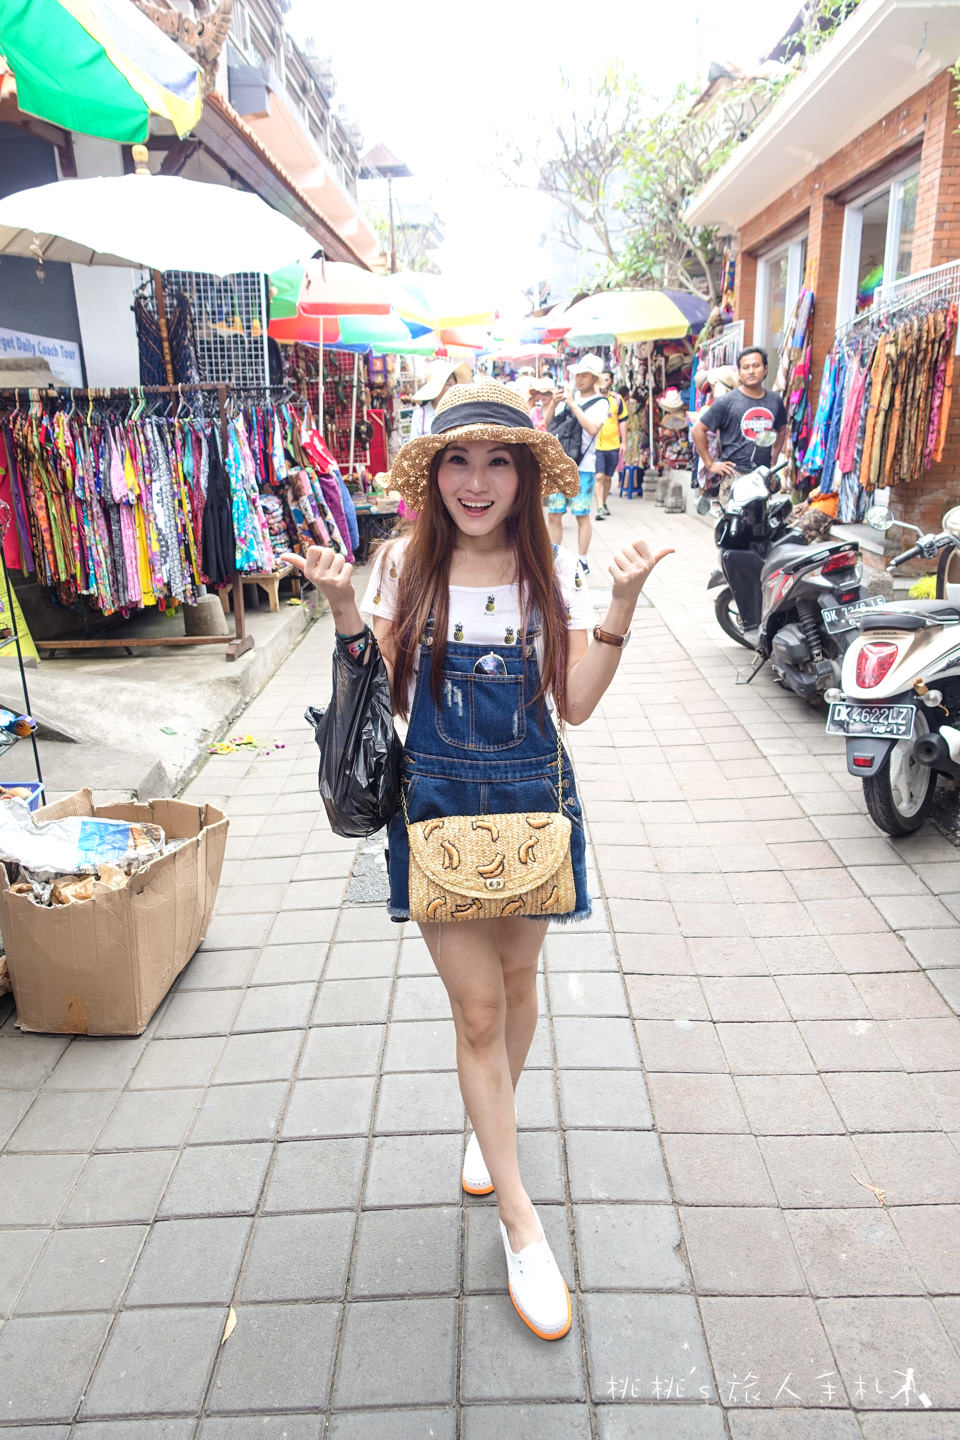 蜜月峇里島》烏布傳統市場｜享受殺價與購物的快樂